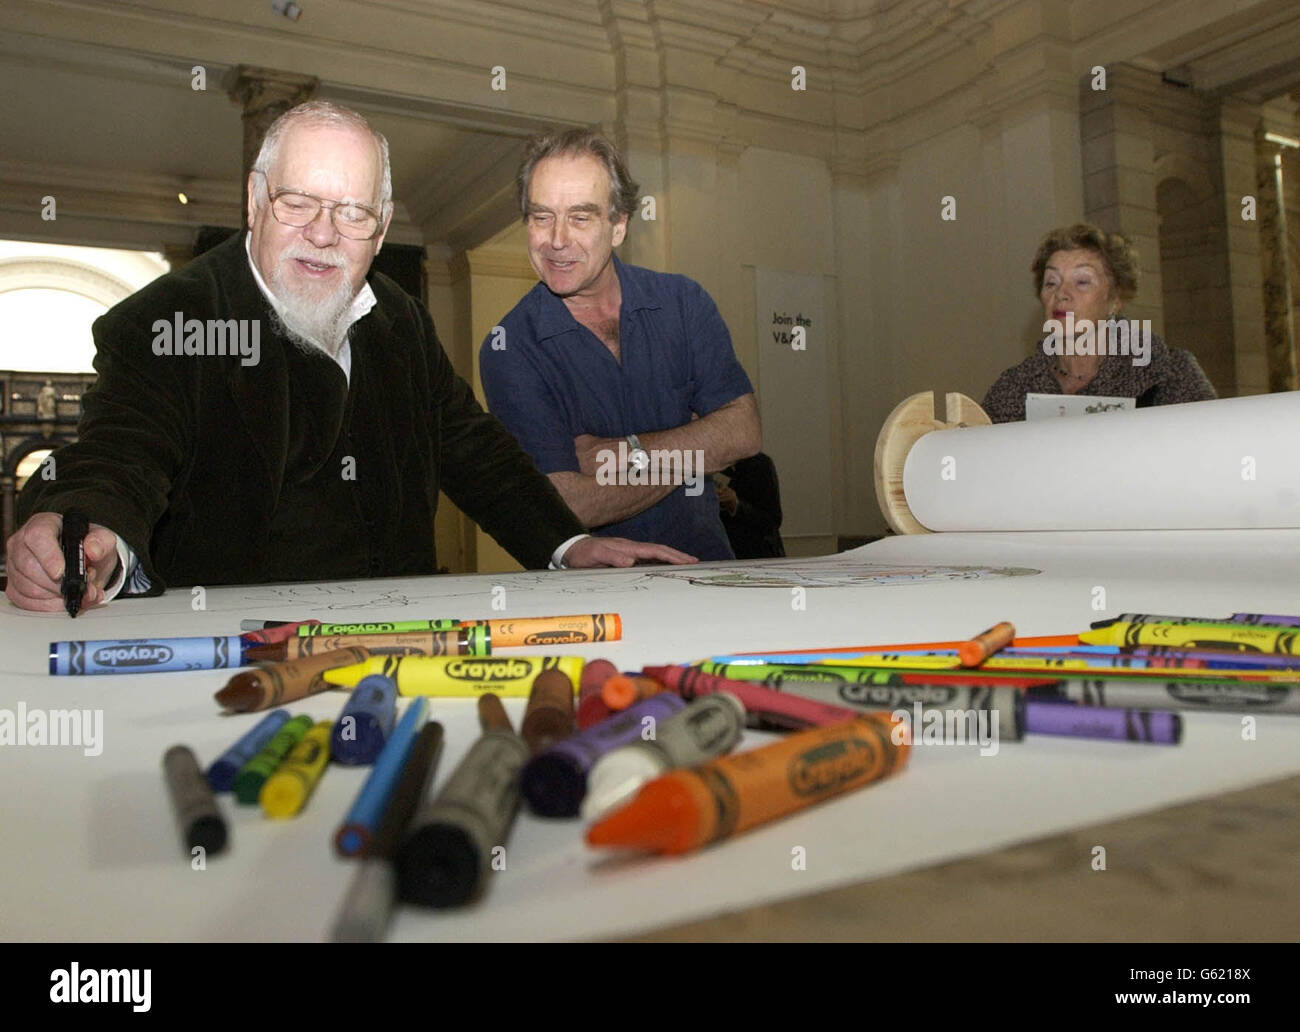 L'artista Peter Blake (a sinistra) abbonda sotto lo sguardo del fumettista Gerald Scarfe e un membro del pubblico al Victoria and Albert Museum di Londra per lanciare Draw the World, una campagna nazionale per ottenere il disegno paese. Foto Stock